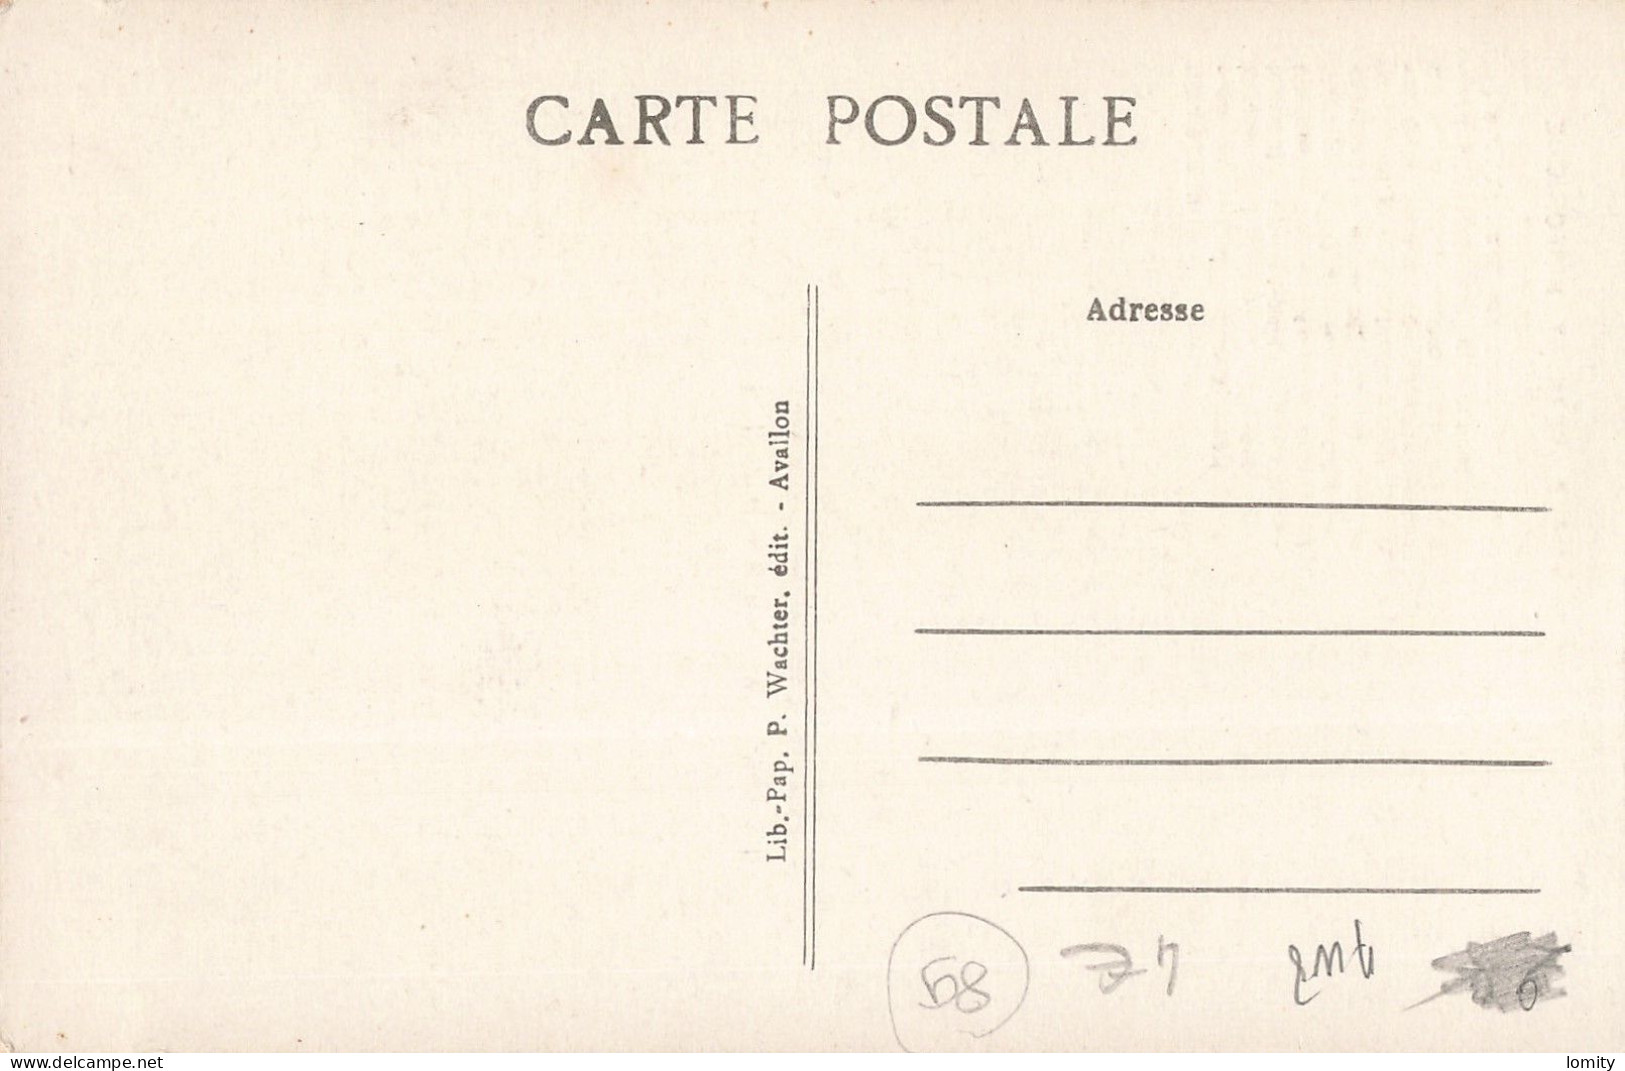 Destockage lot de 29 cartes postales CPA de l' Yonne Villeneuve Guyard Arcy sur Cure Cravant Joigny Sens Auxerre Avallon